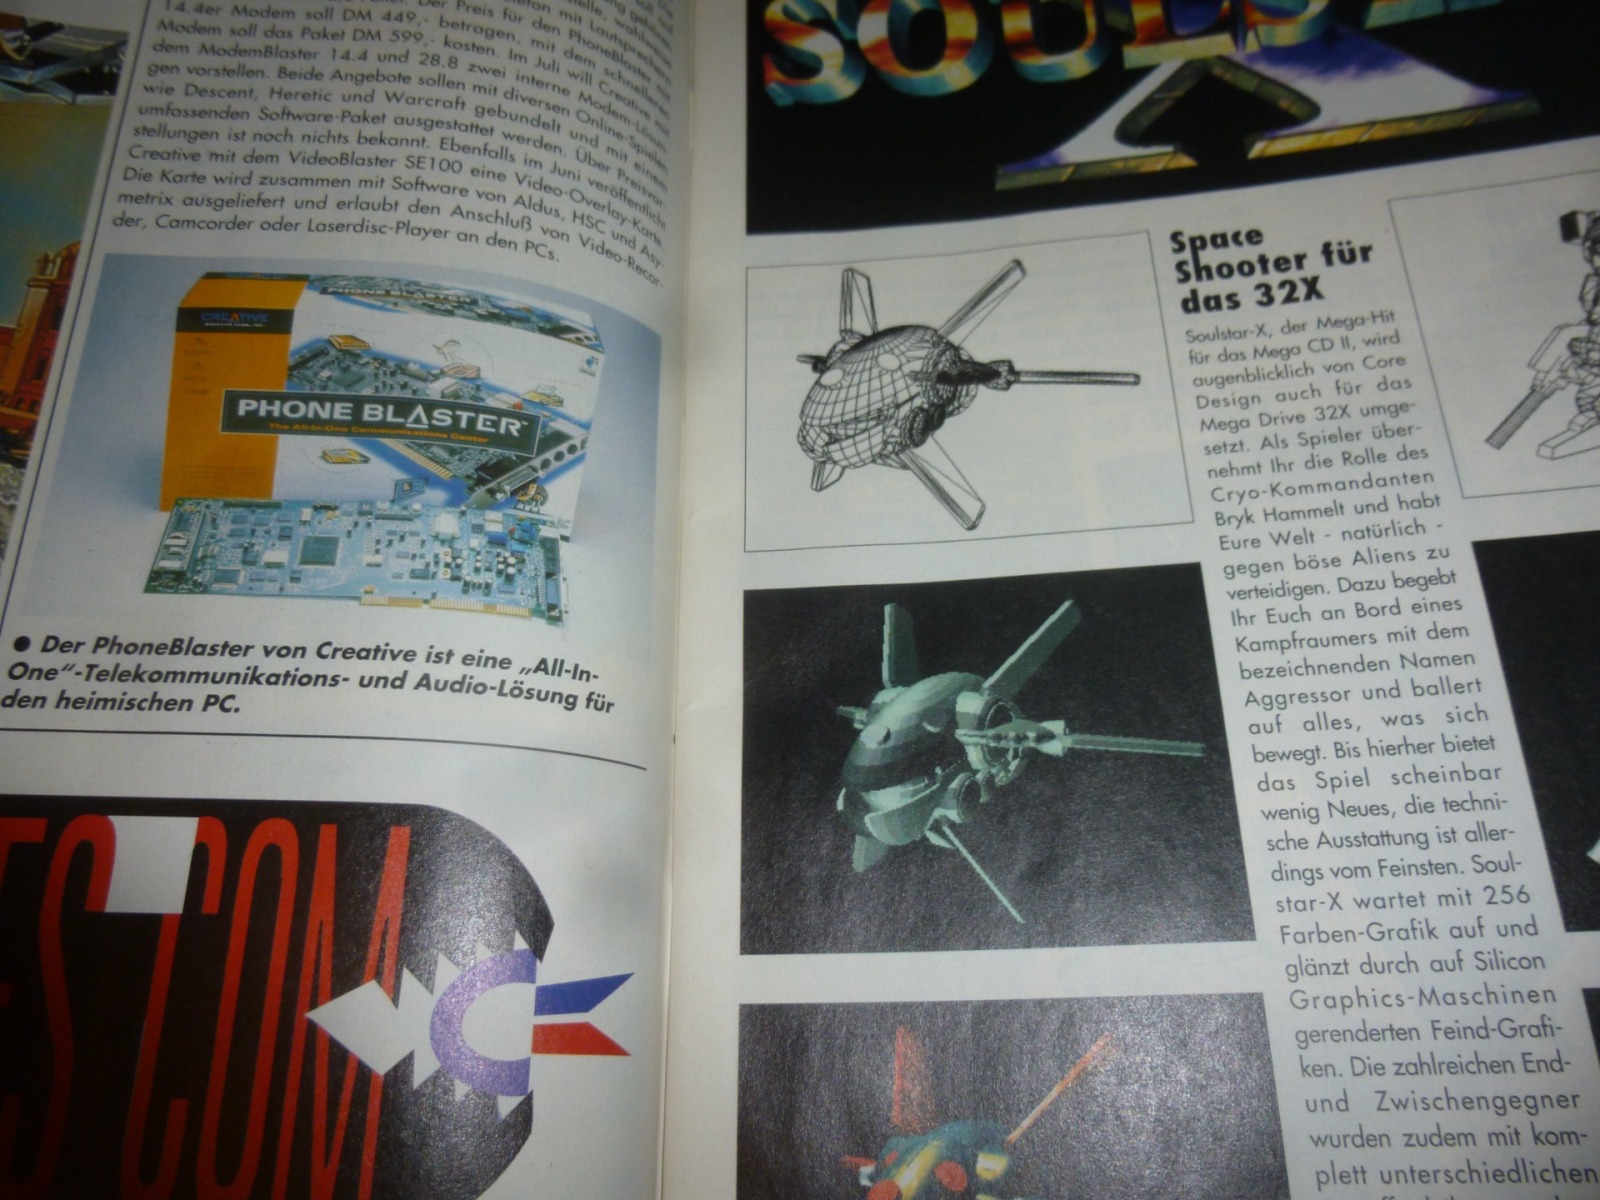 Play Time - Das Computer- und Videospiele-Magazin - Ausgabe 7/95 1995 3